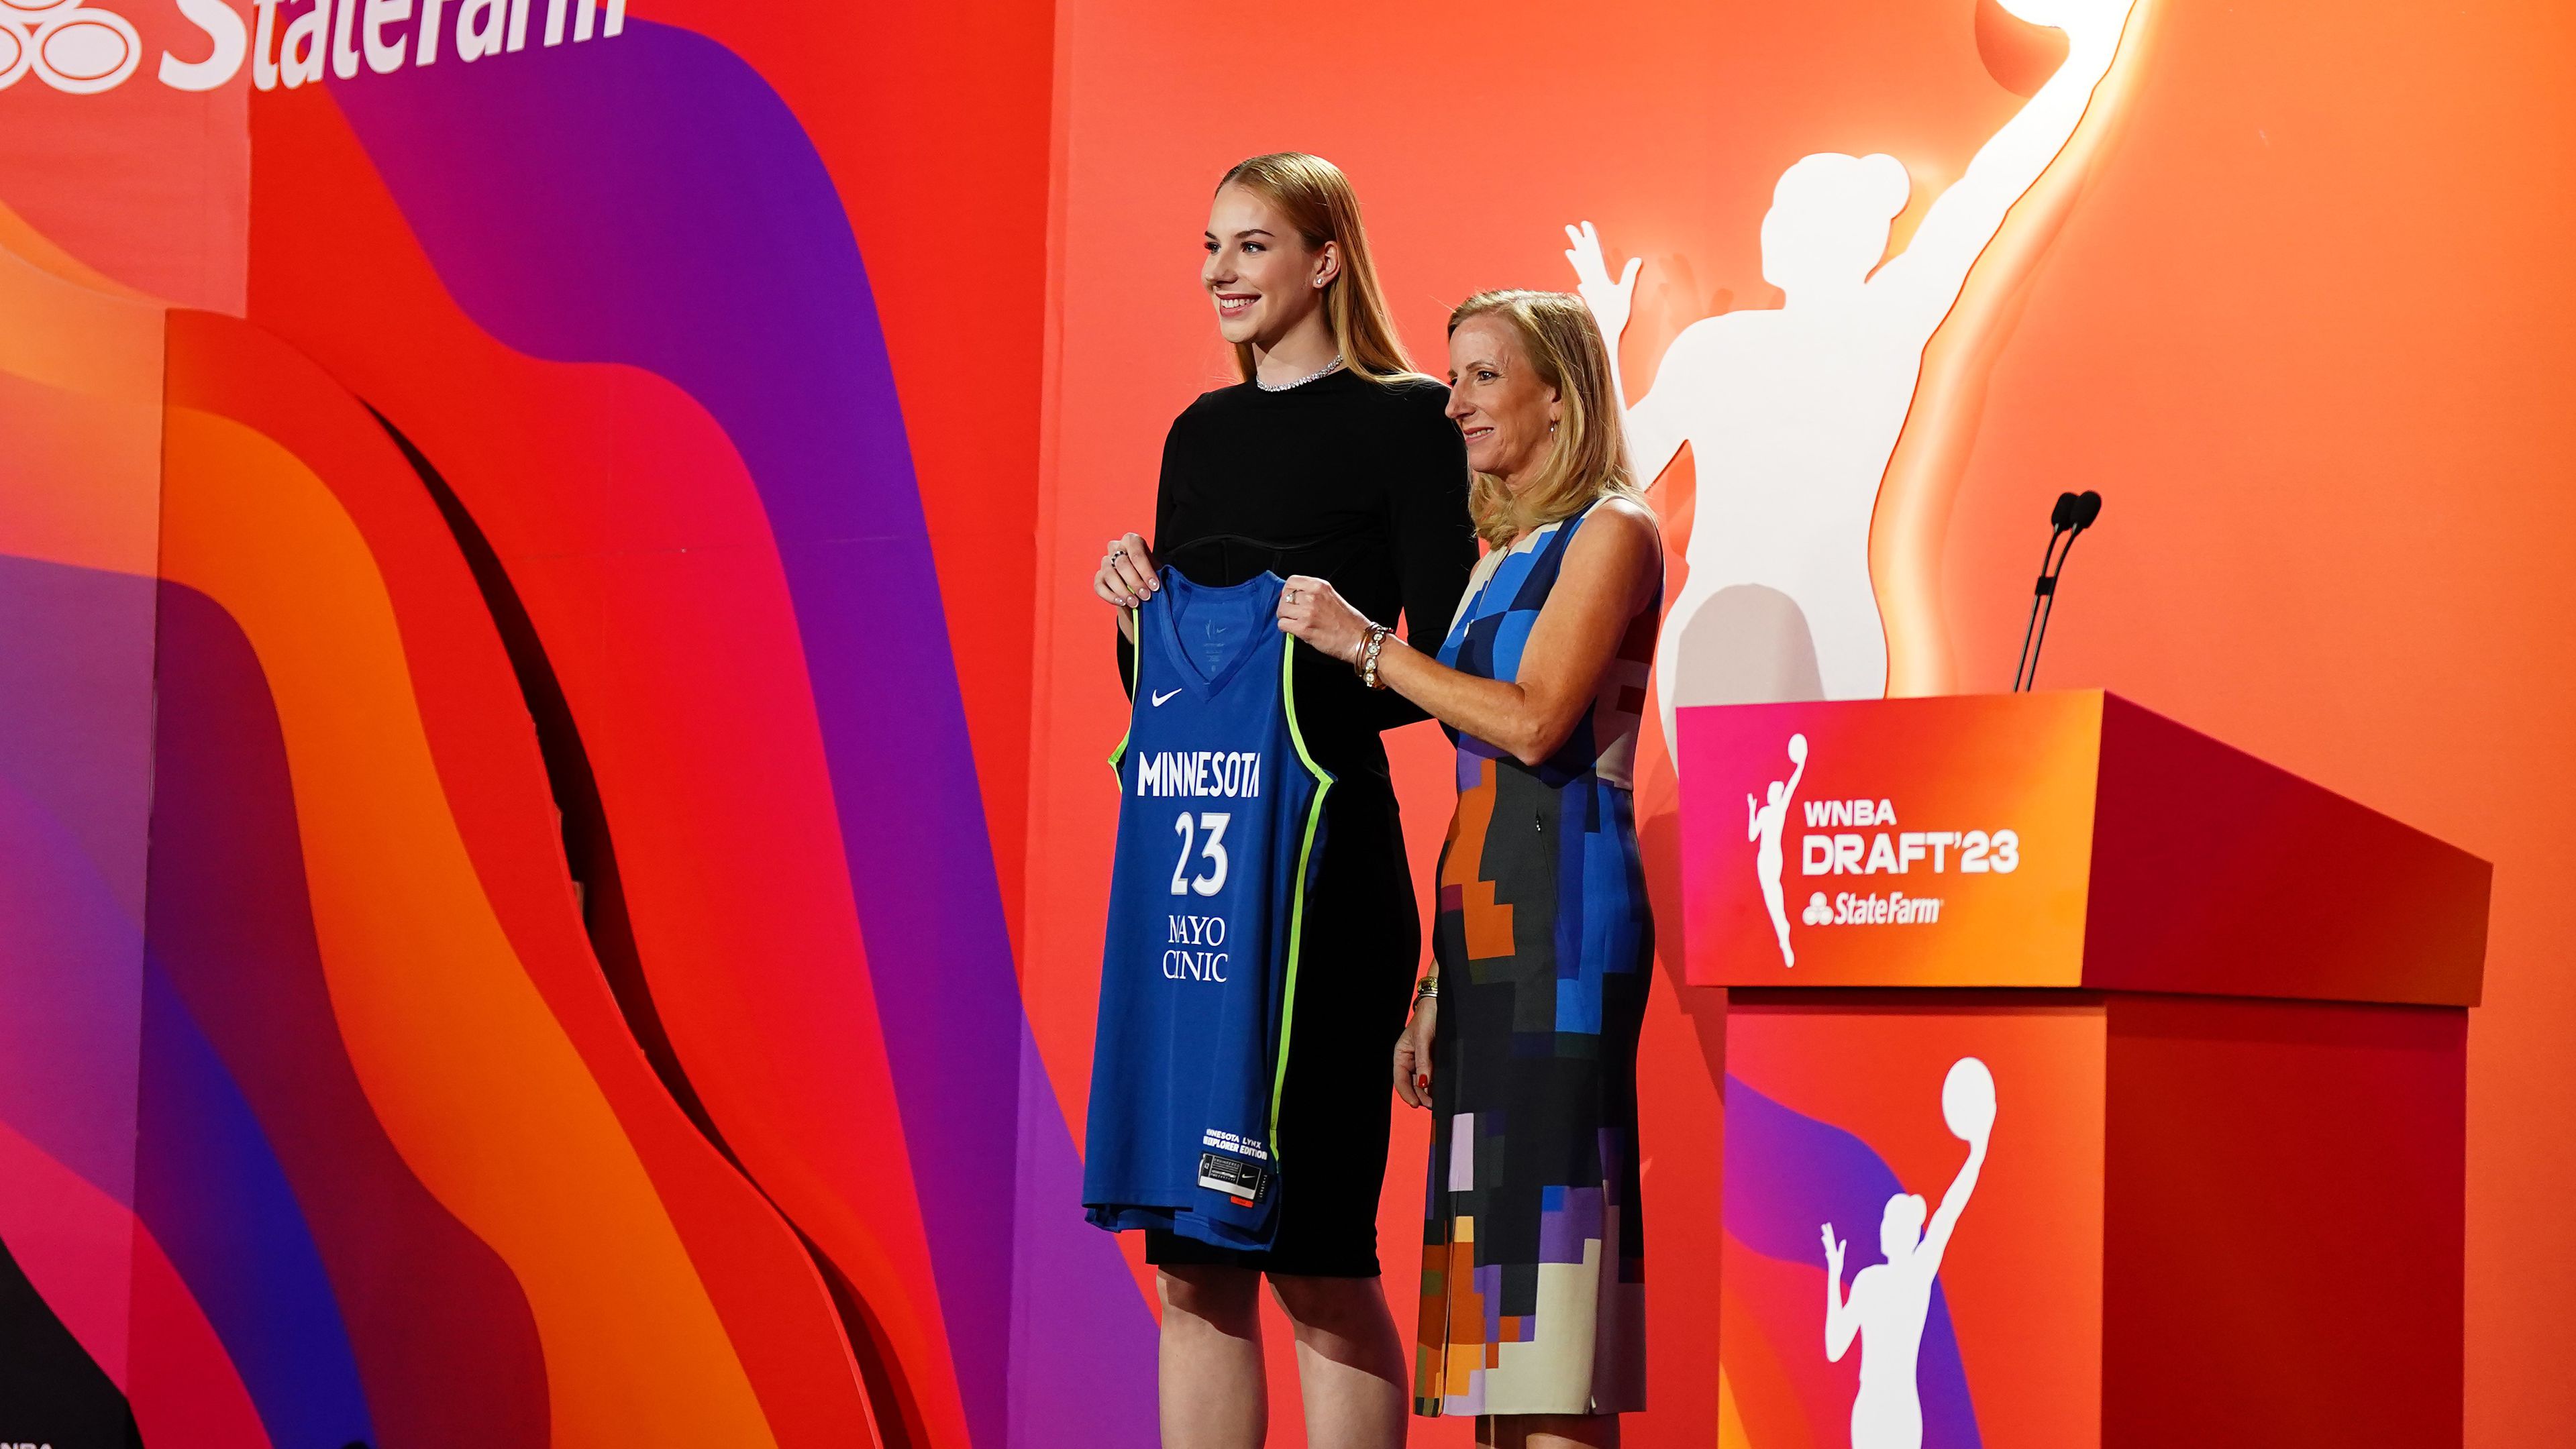 Aláírta szerződését a WNBA-drafton kiválasztott Juhász Dorka (Fotó: Getty Images)